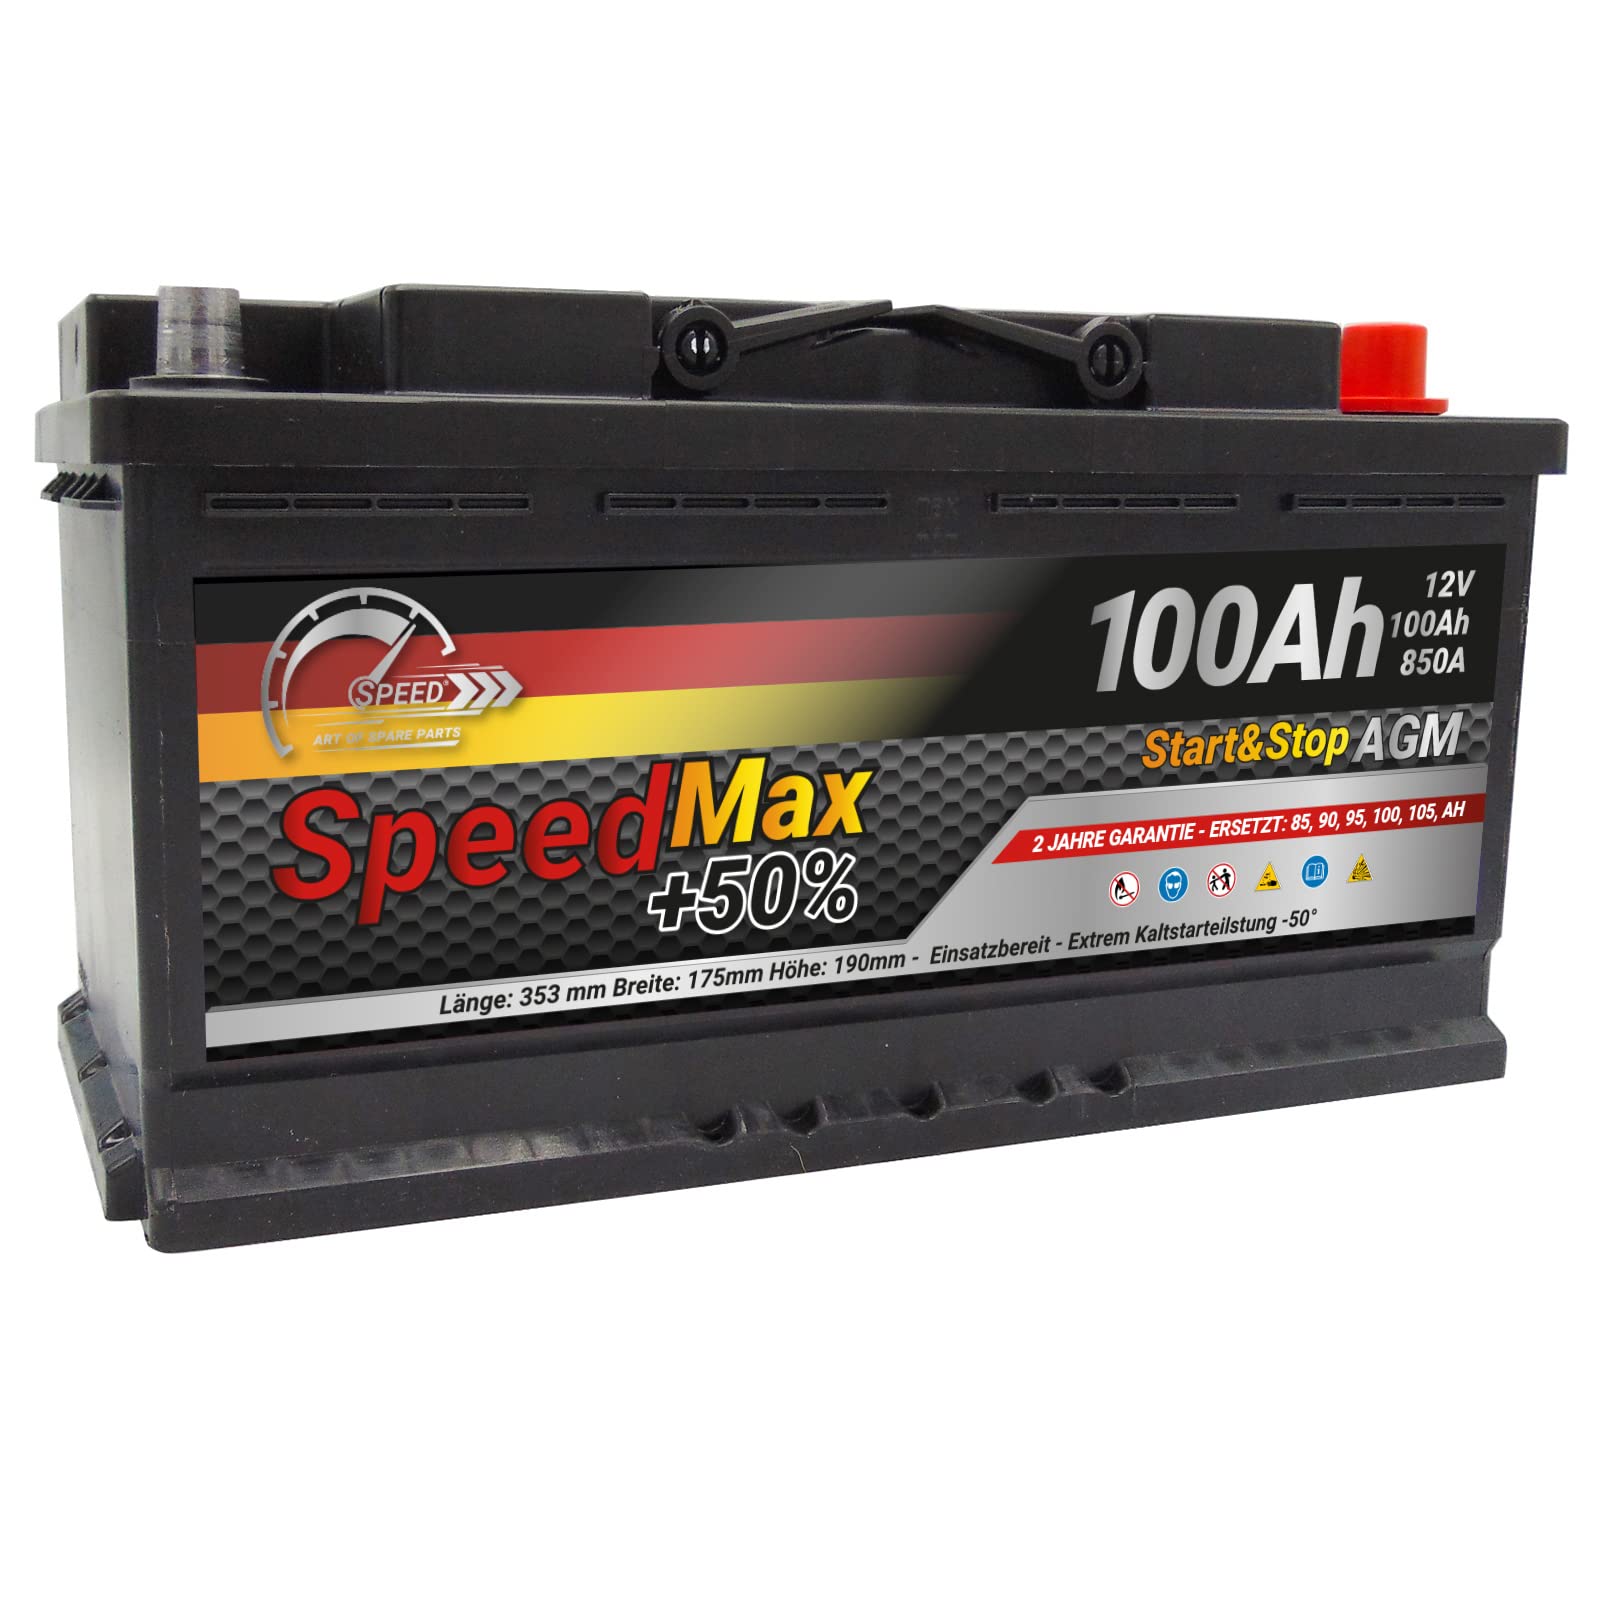 Autobatterie Speed Max Kit (L5100AGMMAX) von SMC